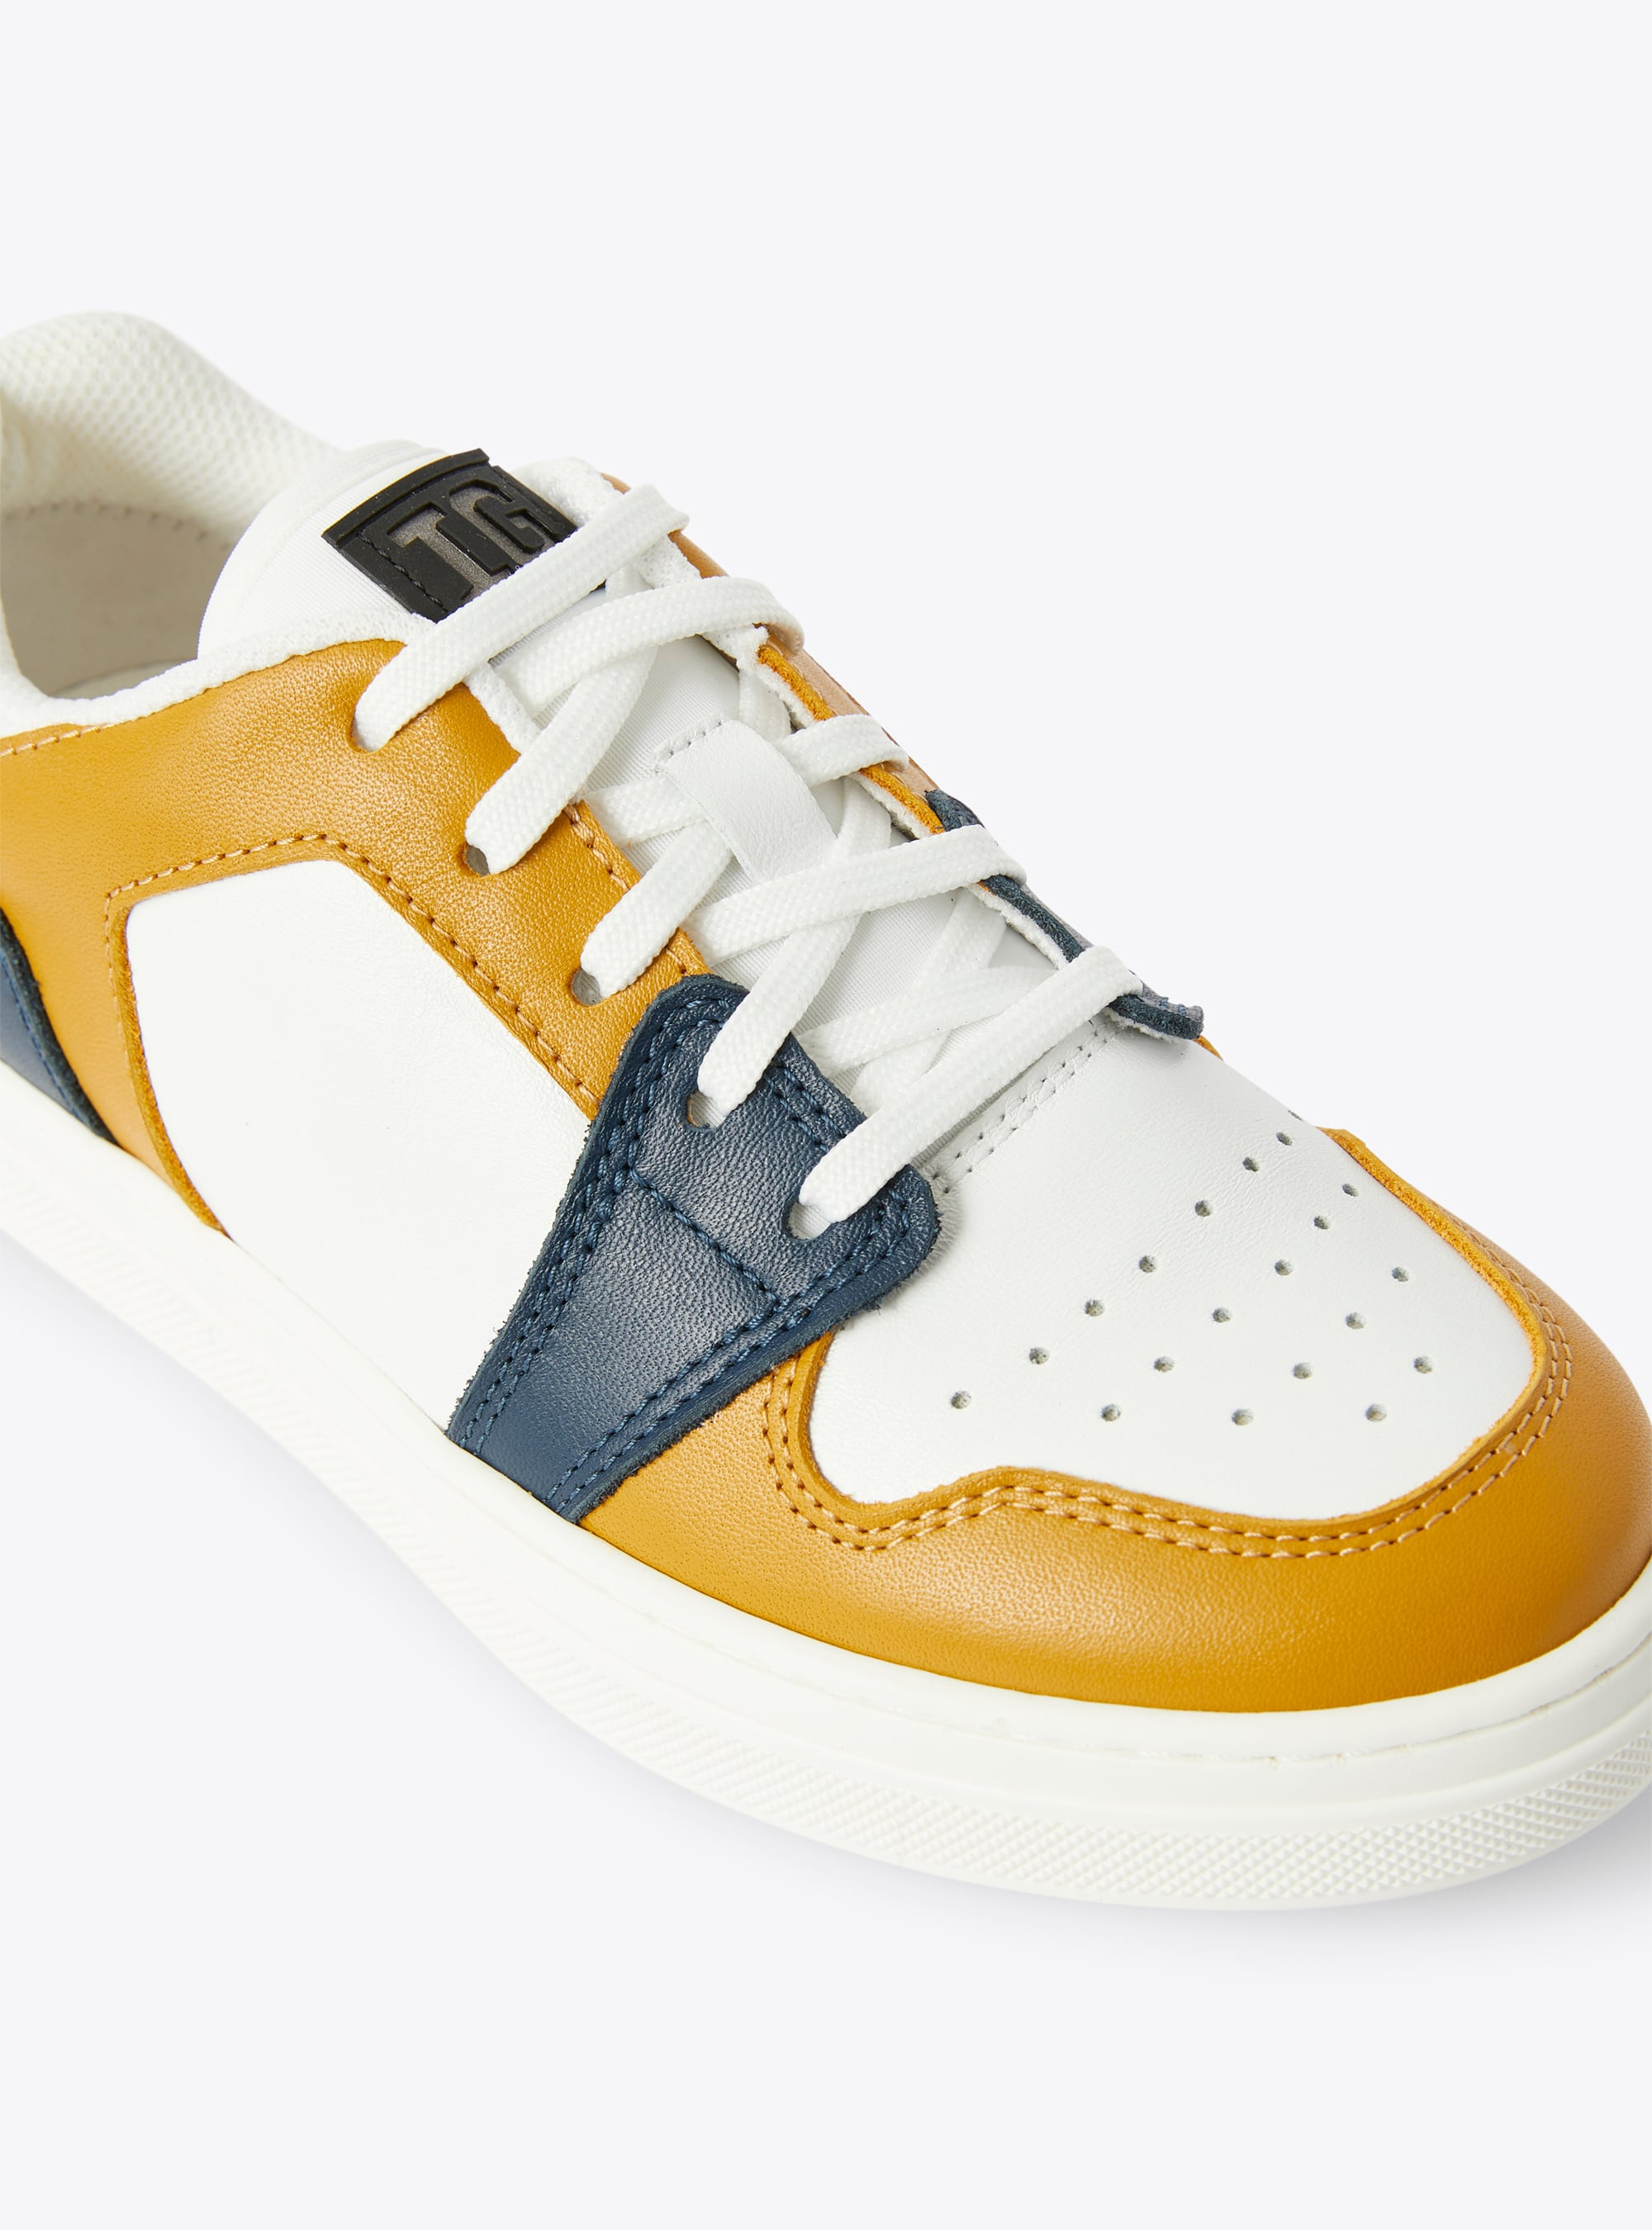 Sneaker IG low top bicolore cannella e blu - Arancione | Il Gufo